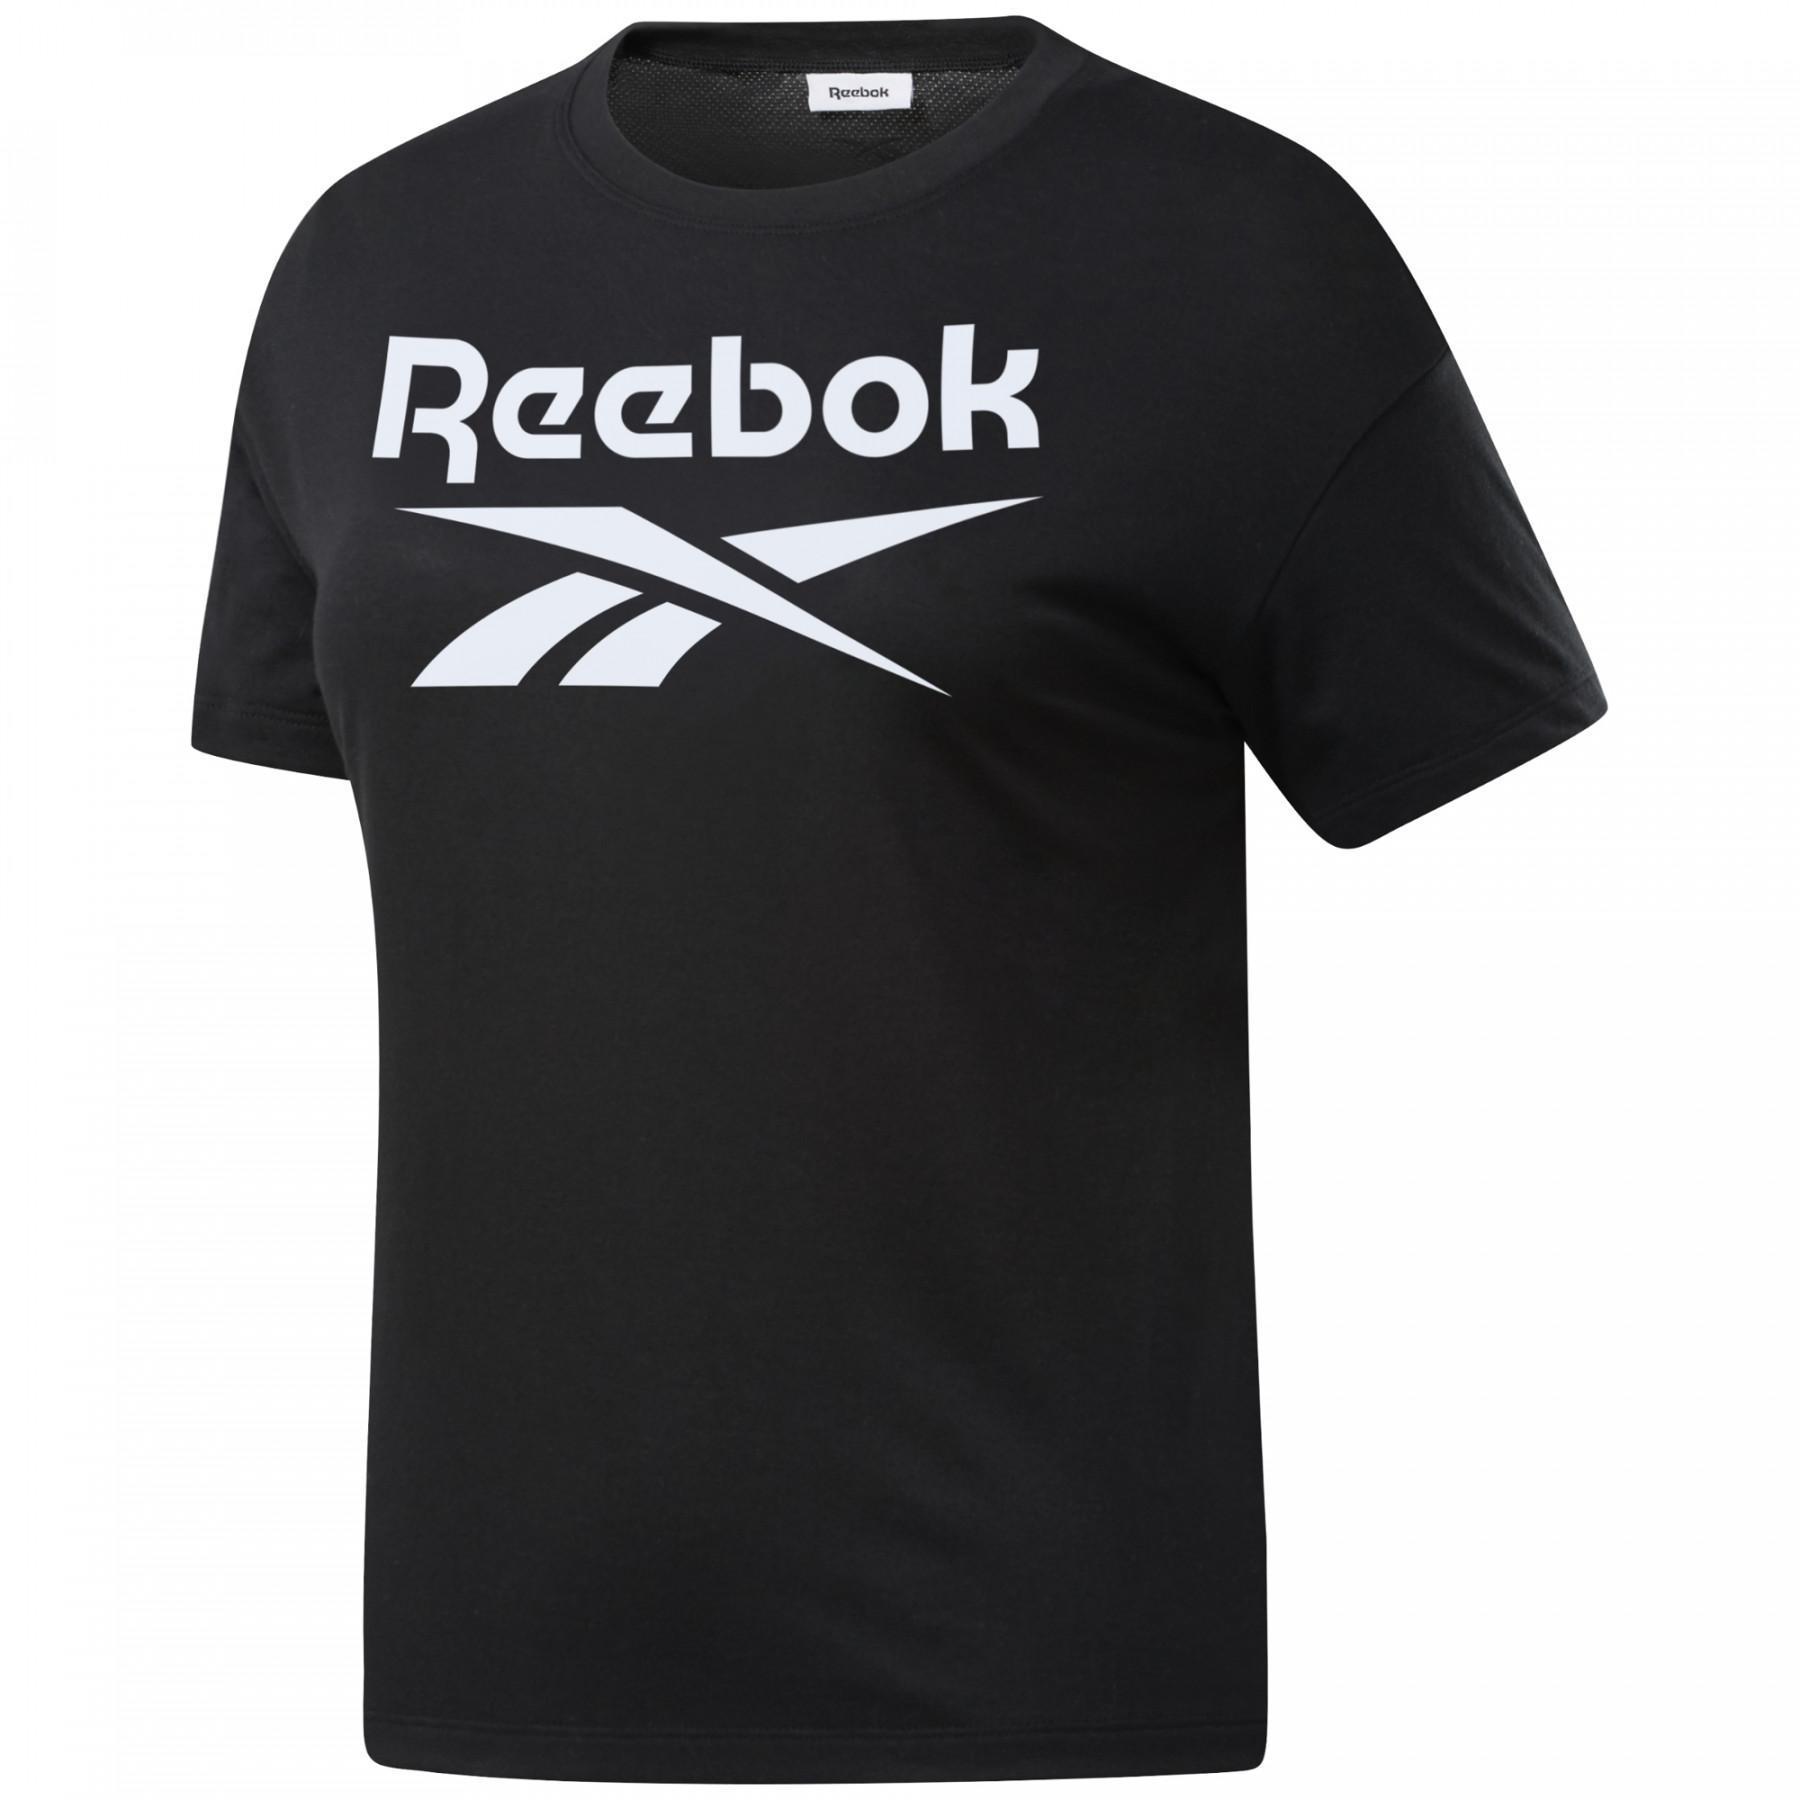 T-shirt för kvinnor Reebok Workout Ready Supremium Logo